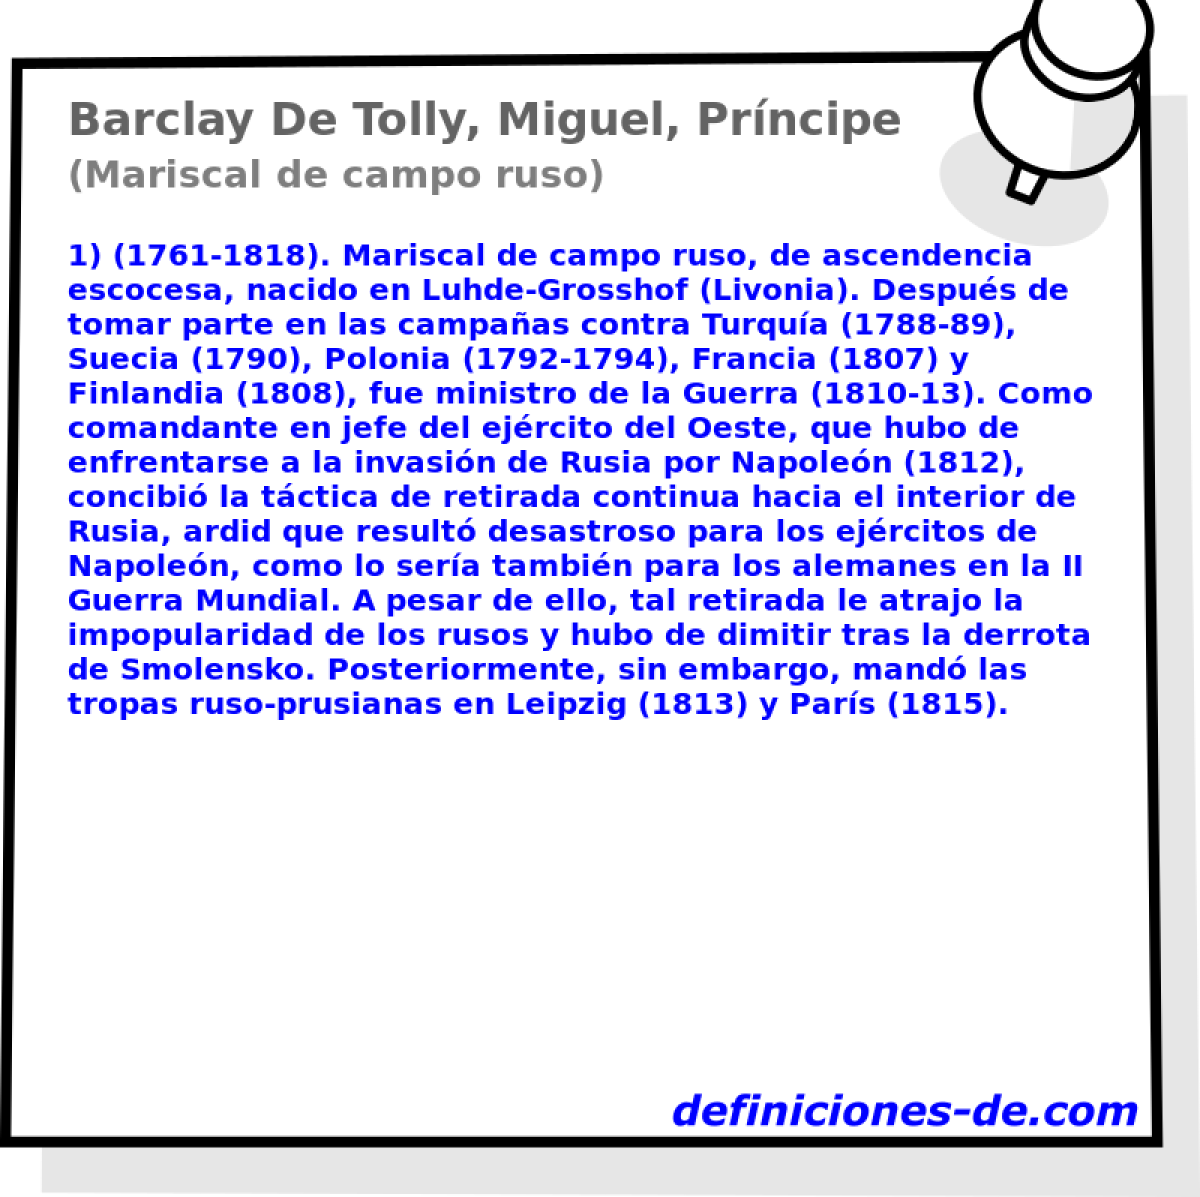 Barclay De Tolly, Miguel, Prncipe (Mariscal de campo ruso)